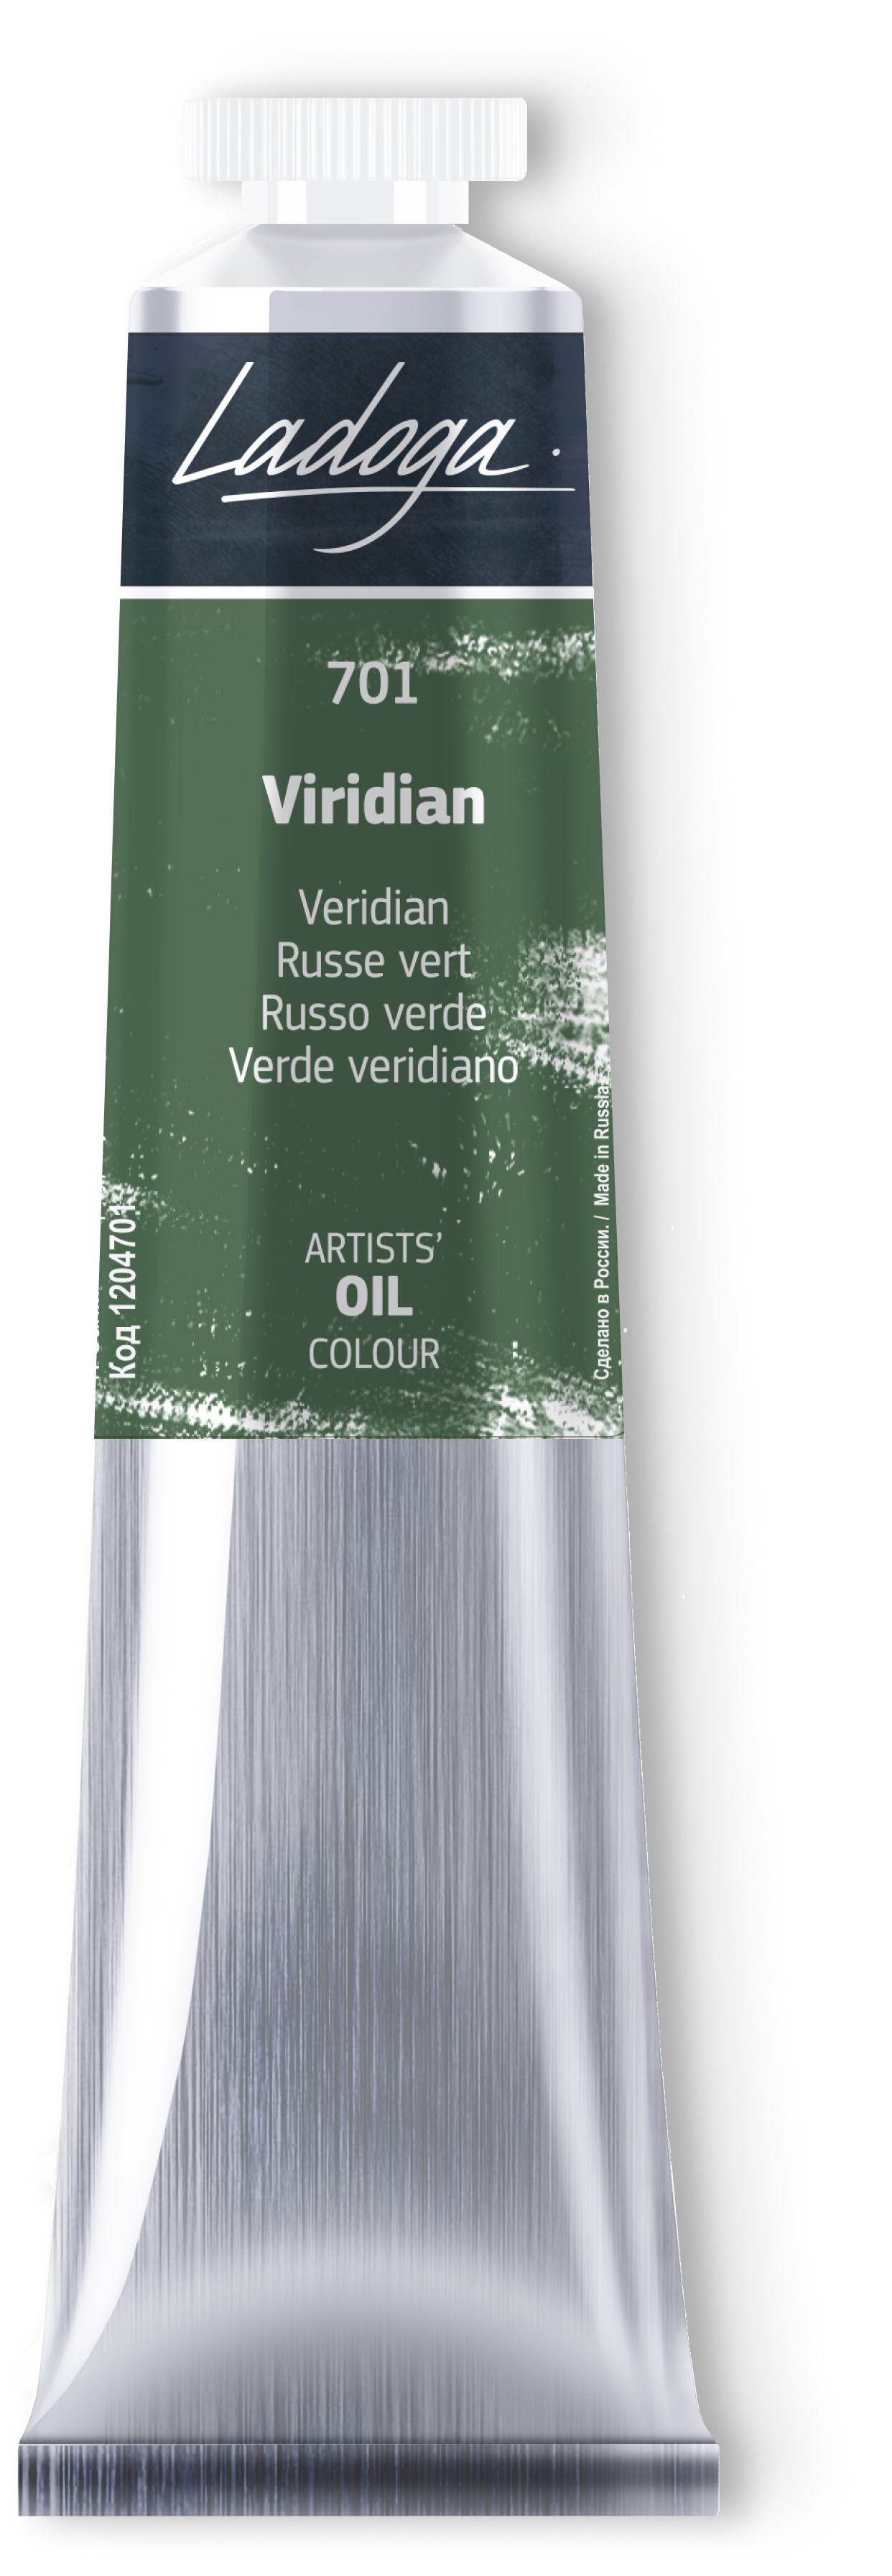 Oil colour "Ladoga", Viridian, tube, № 701